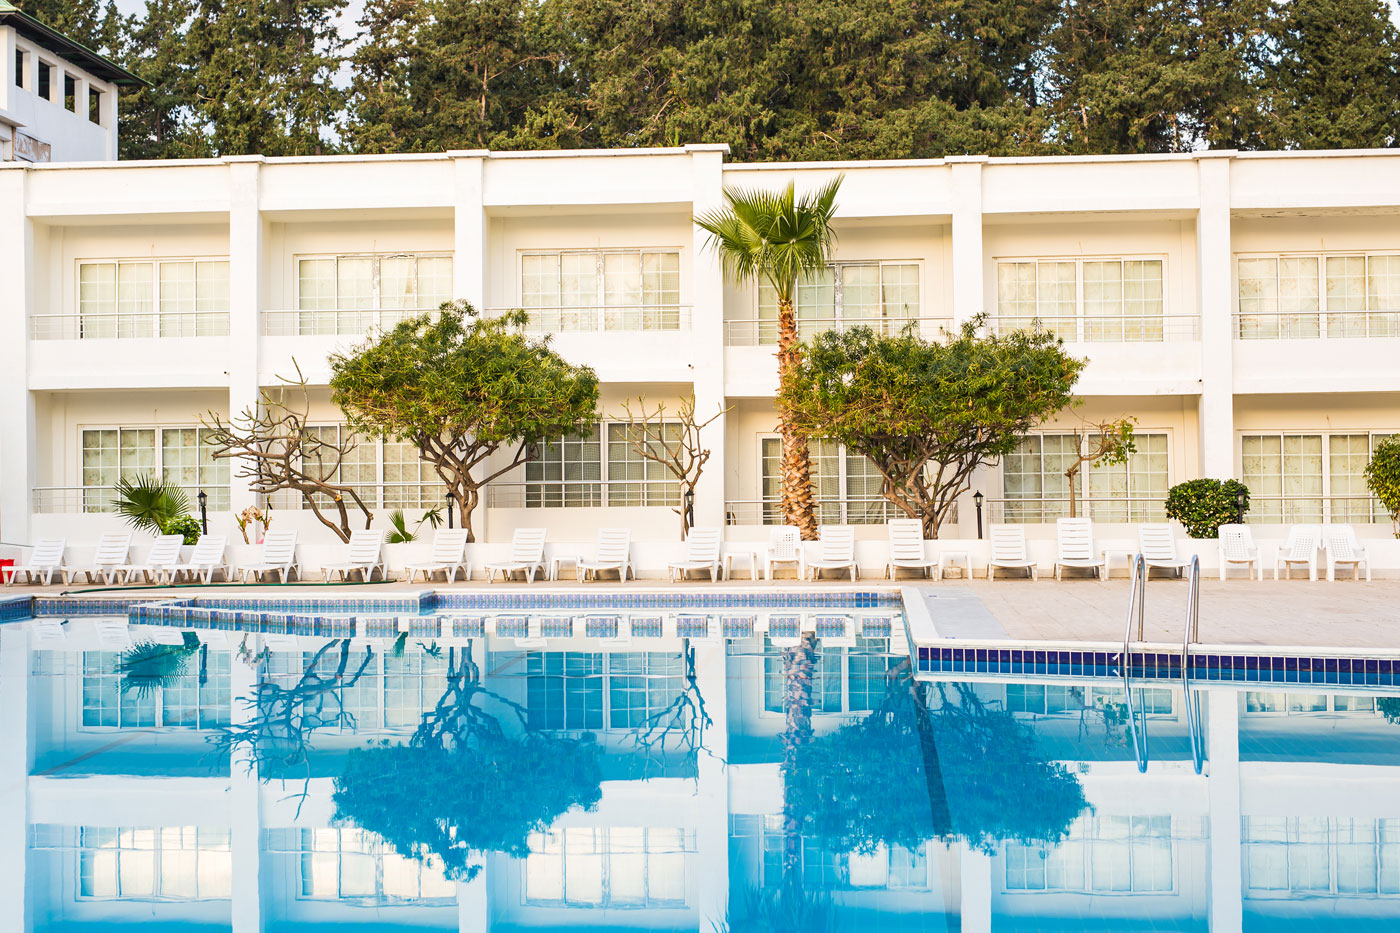 En Mallorca, una comunidad de vecinos restringe el uso de la piscina y la barbacoa comunitarias.